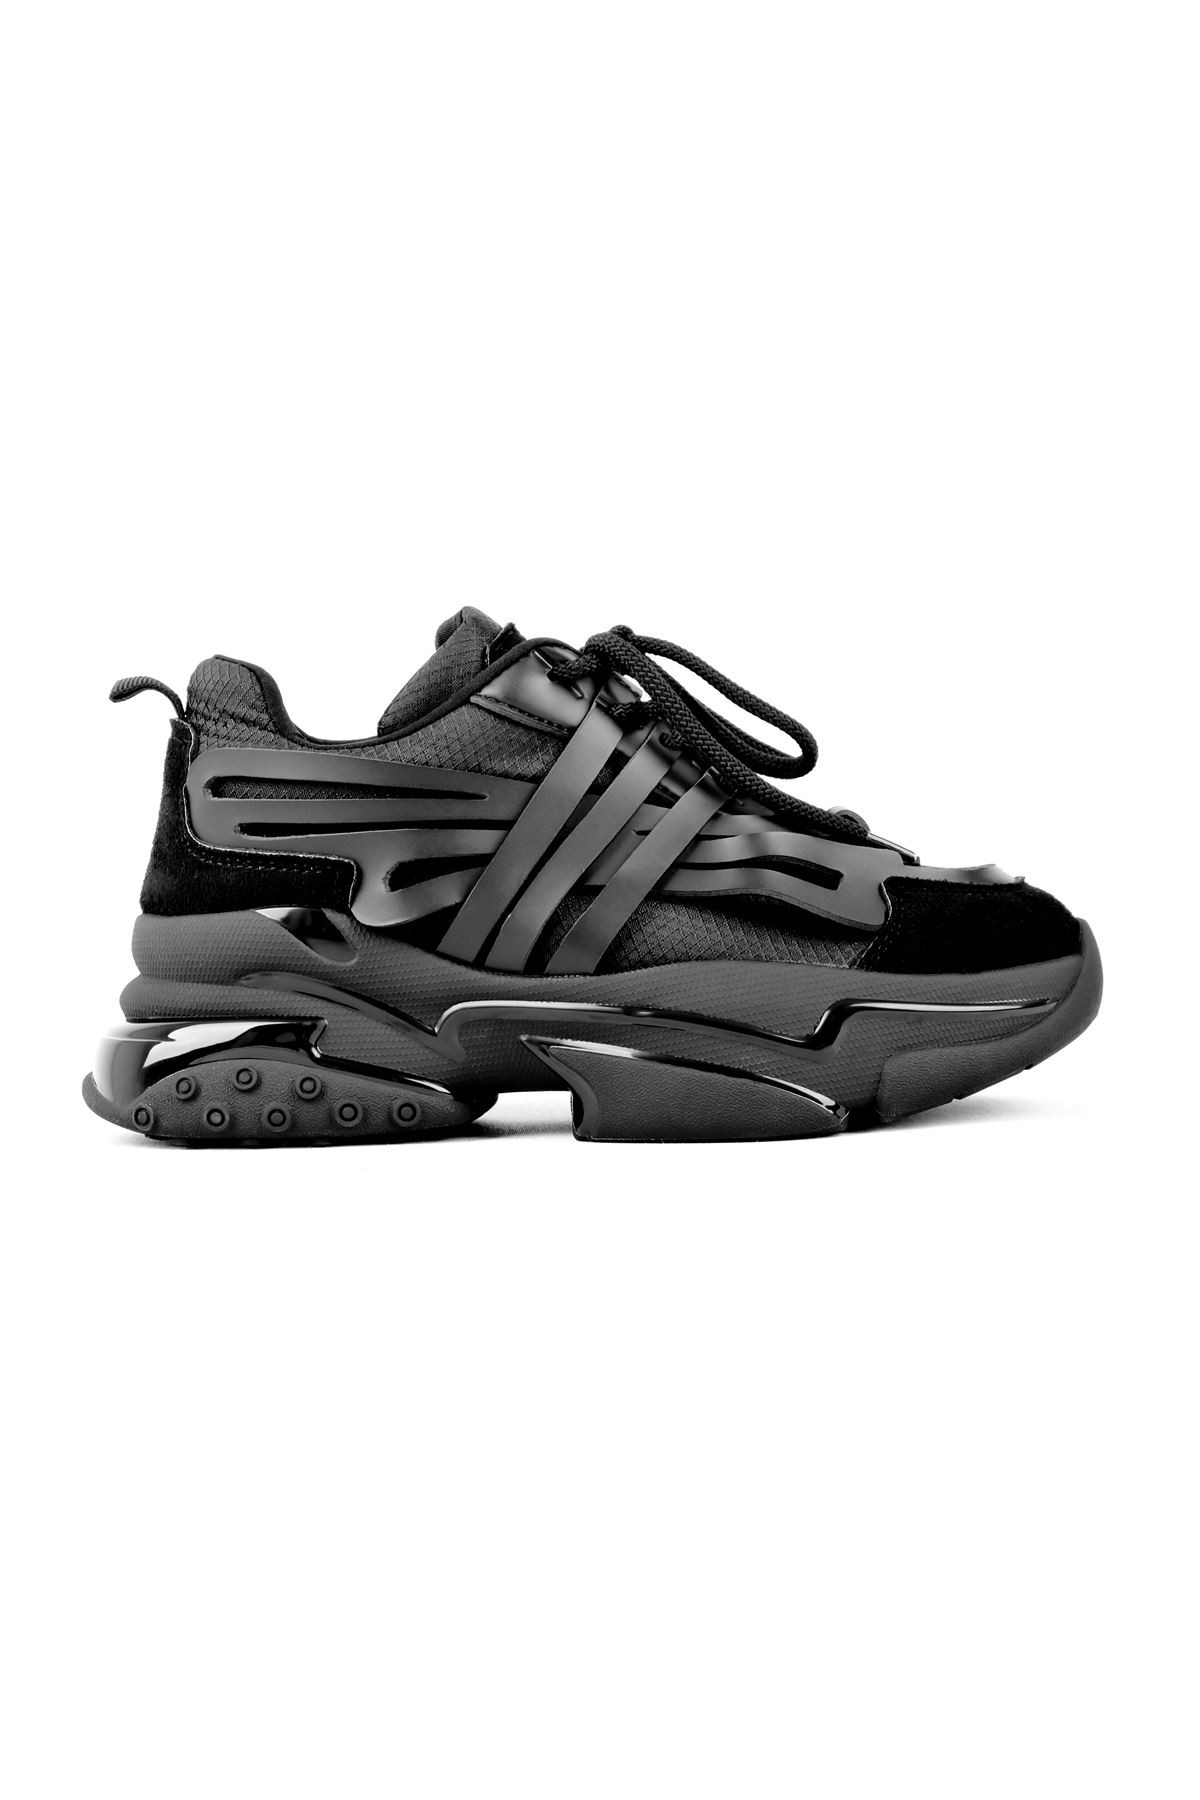 Betty Yüksek Taban Kadın Spor Ayakkabı B3010 - Siyah